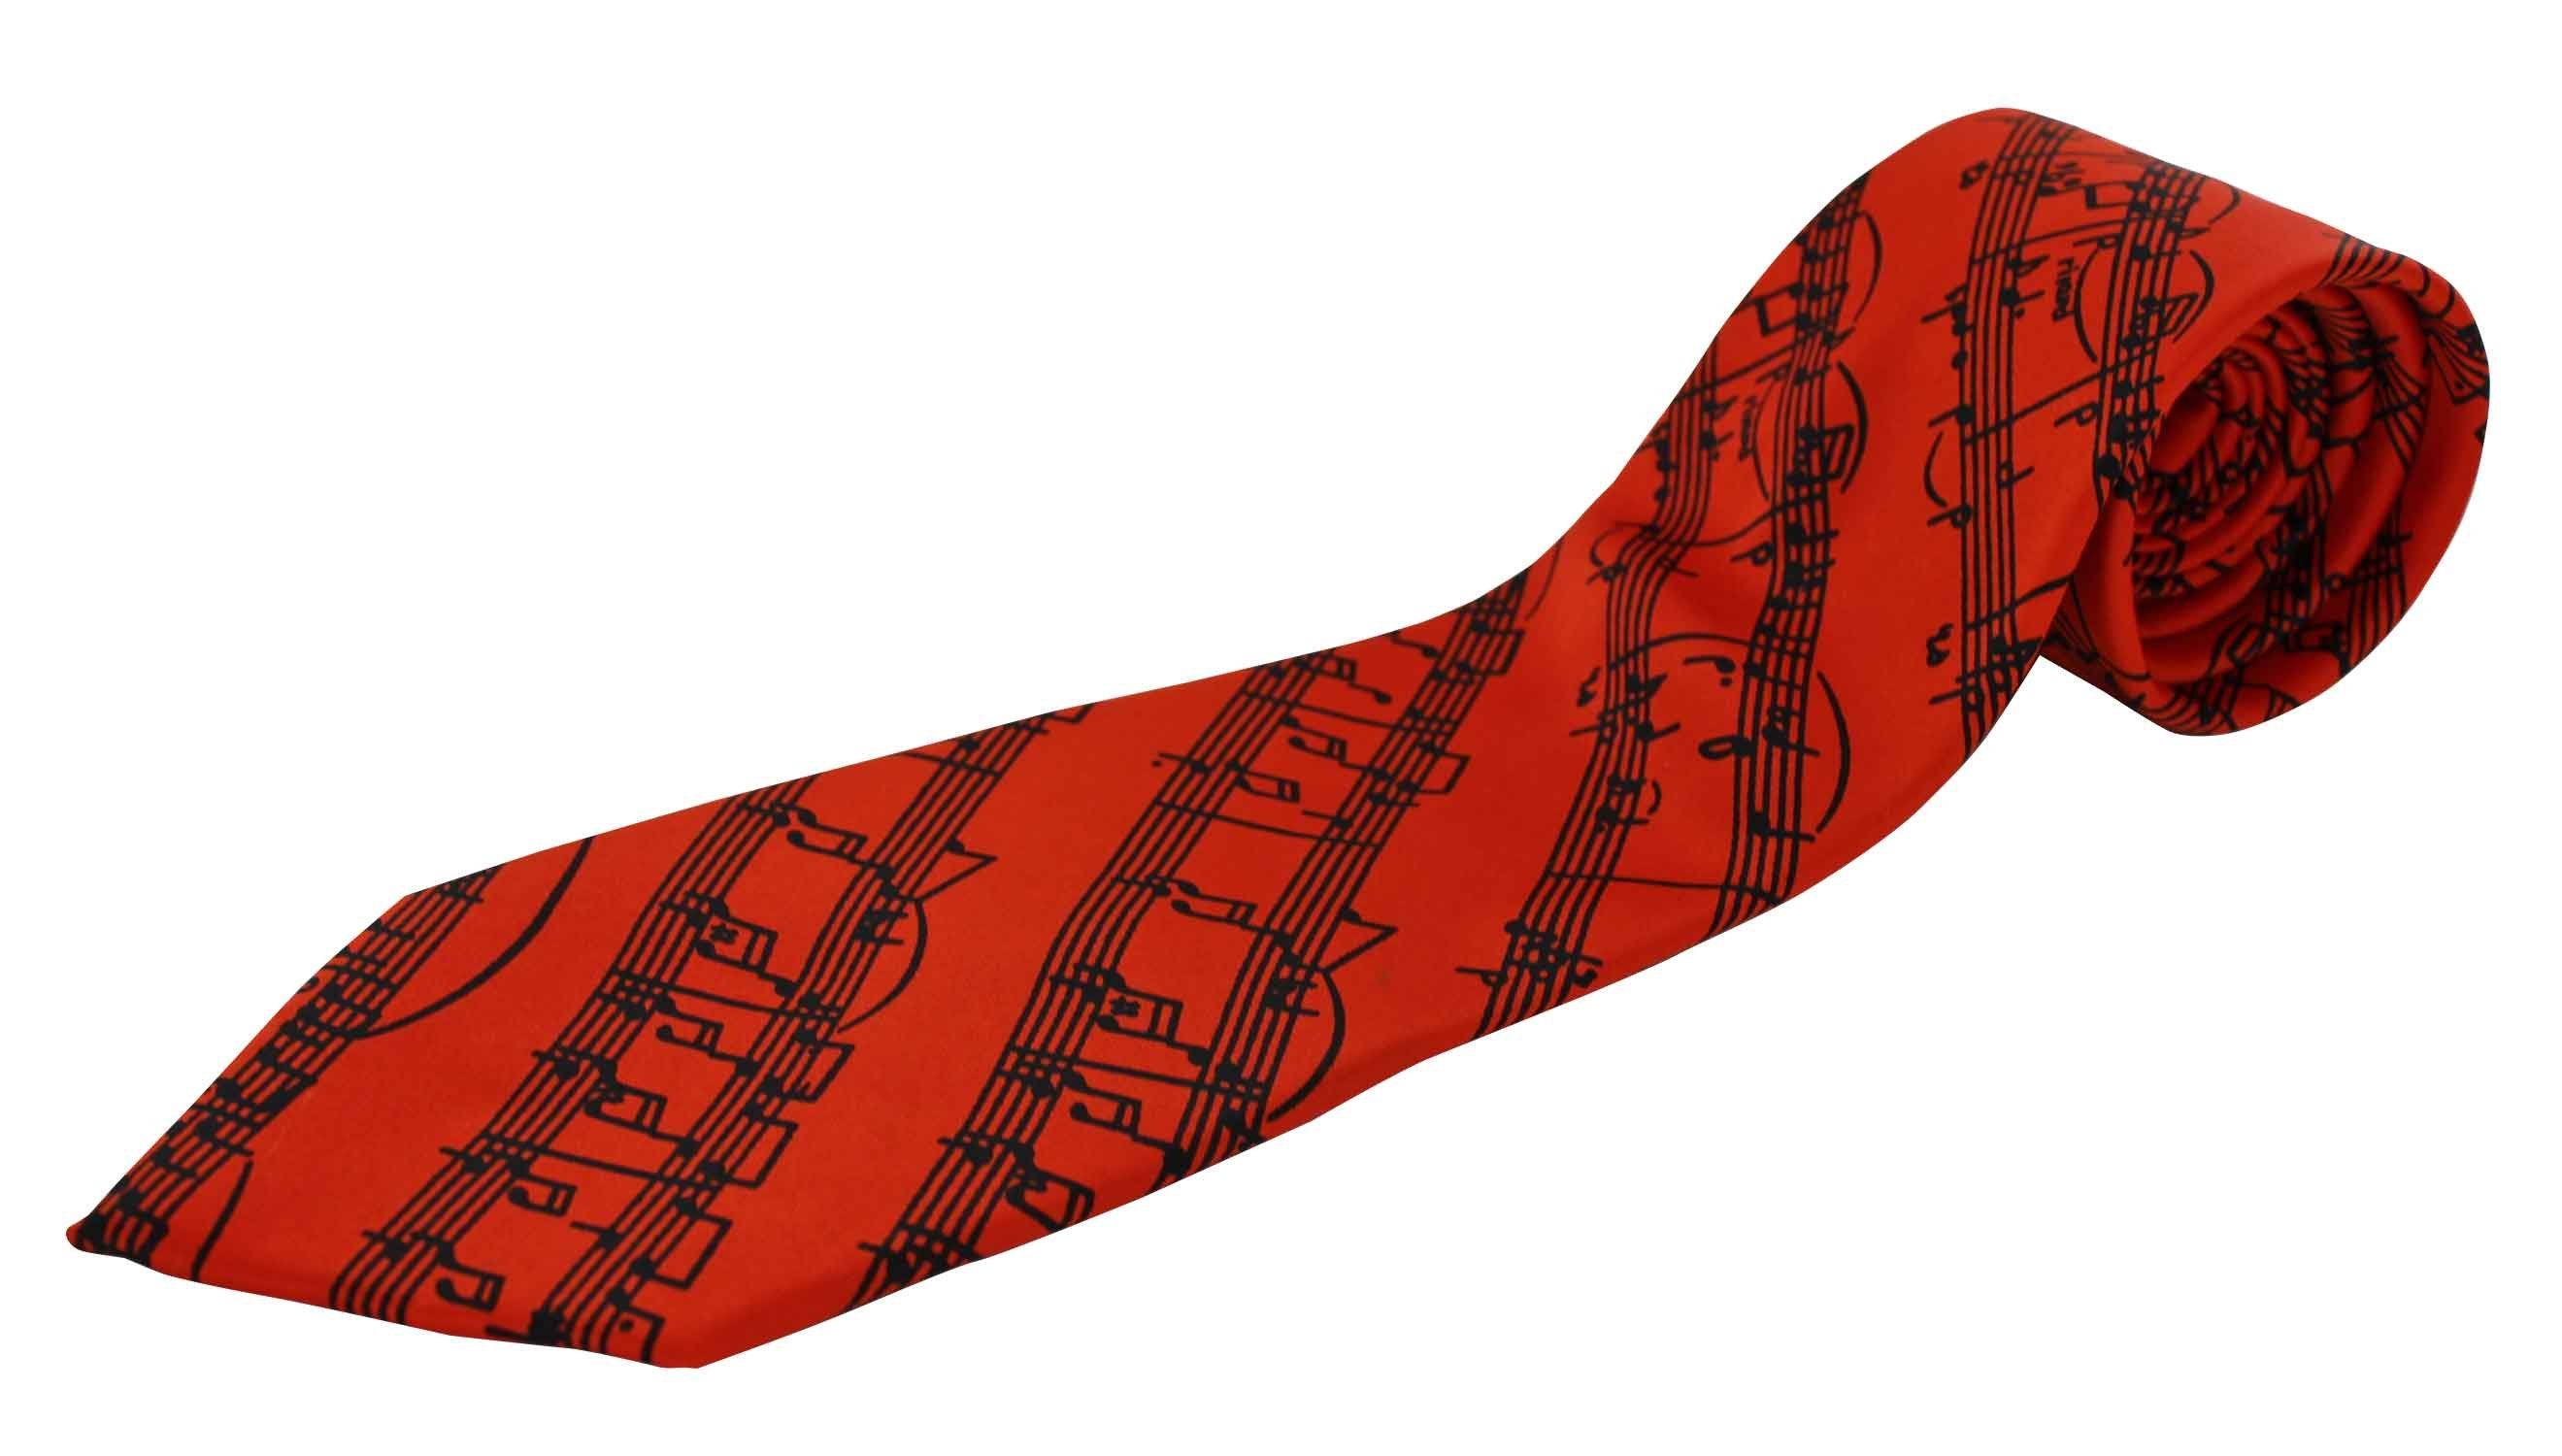 mugesh Krawatte Krawatte Musiker orange für Notenlinien